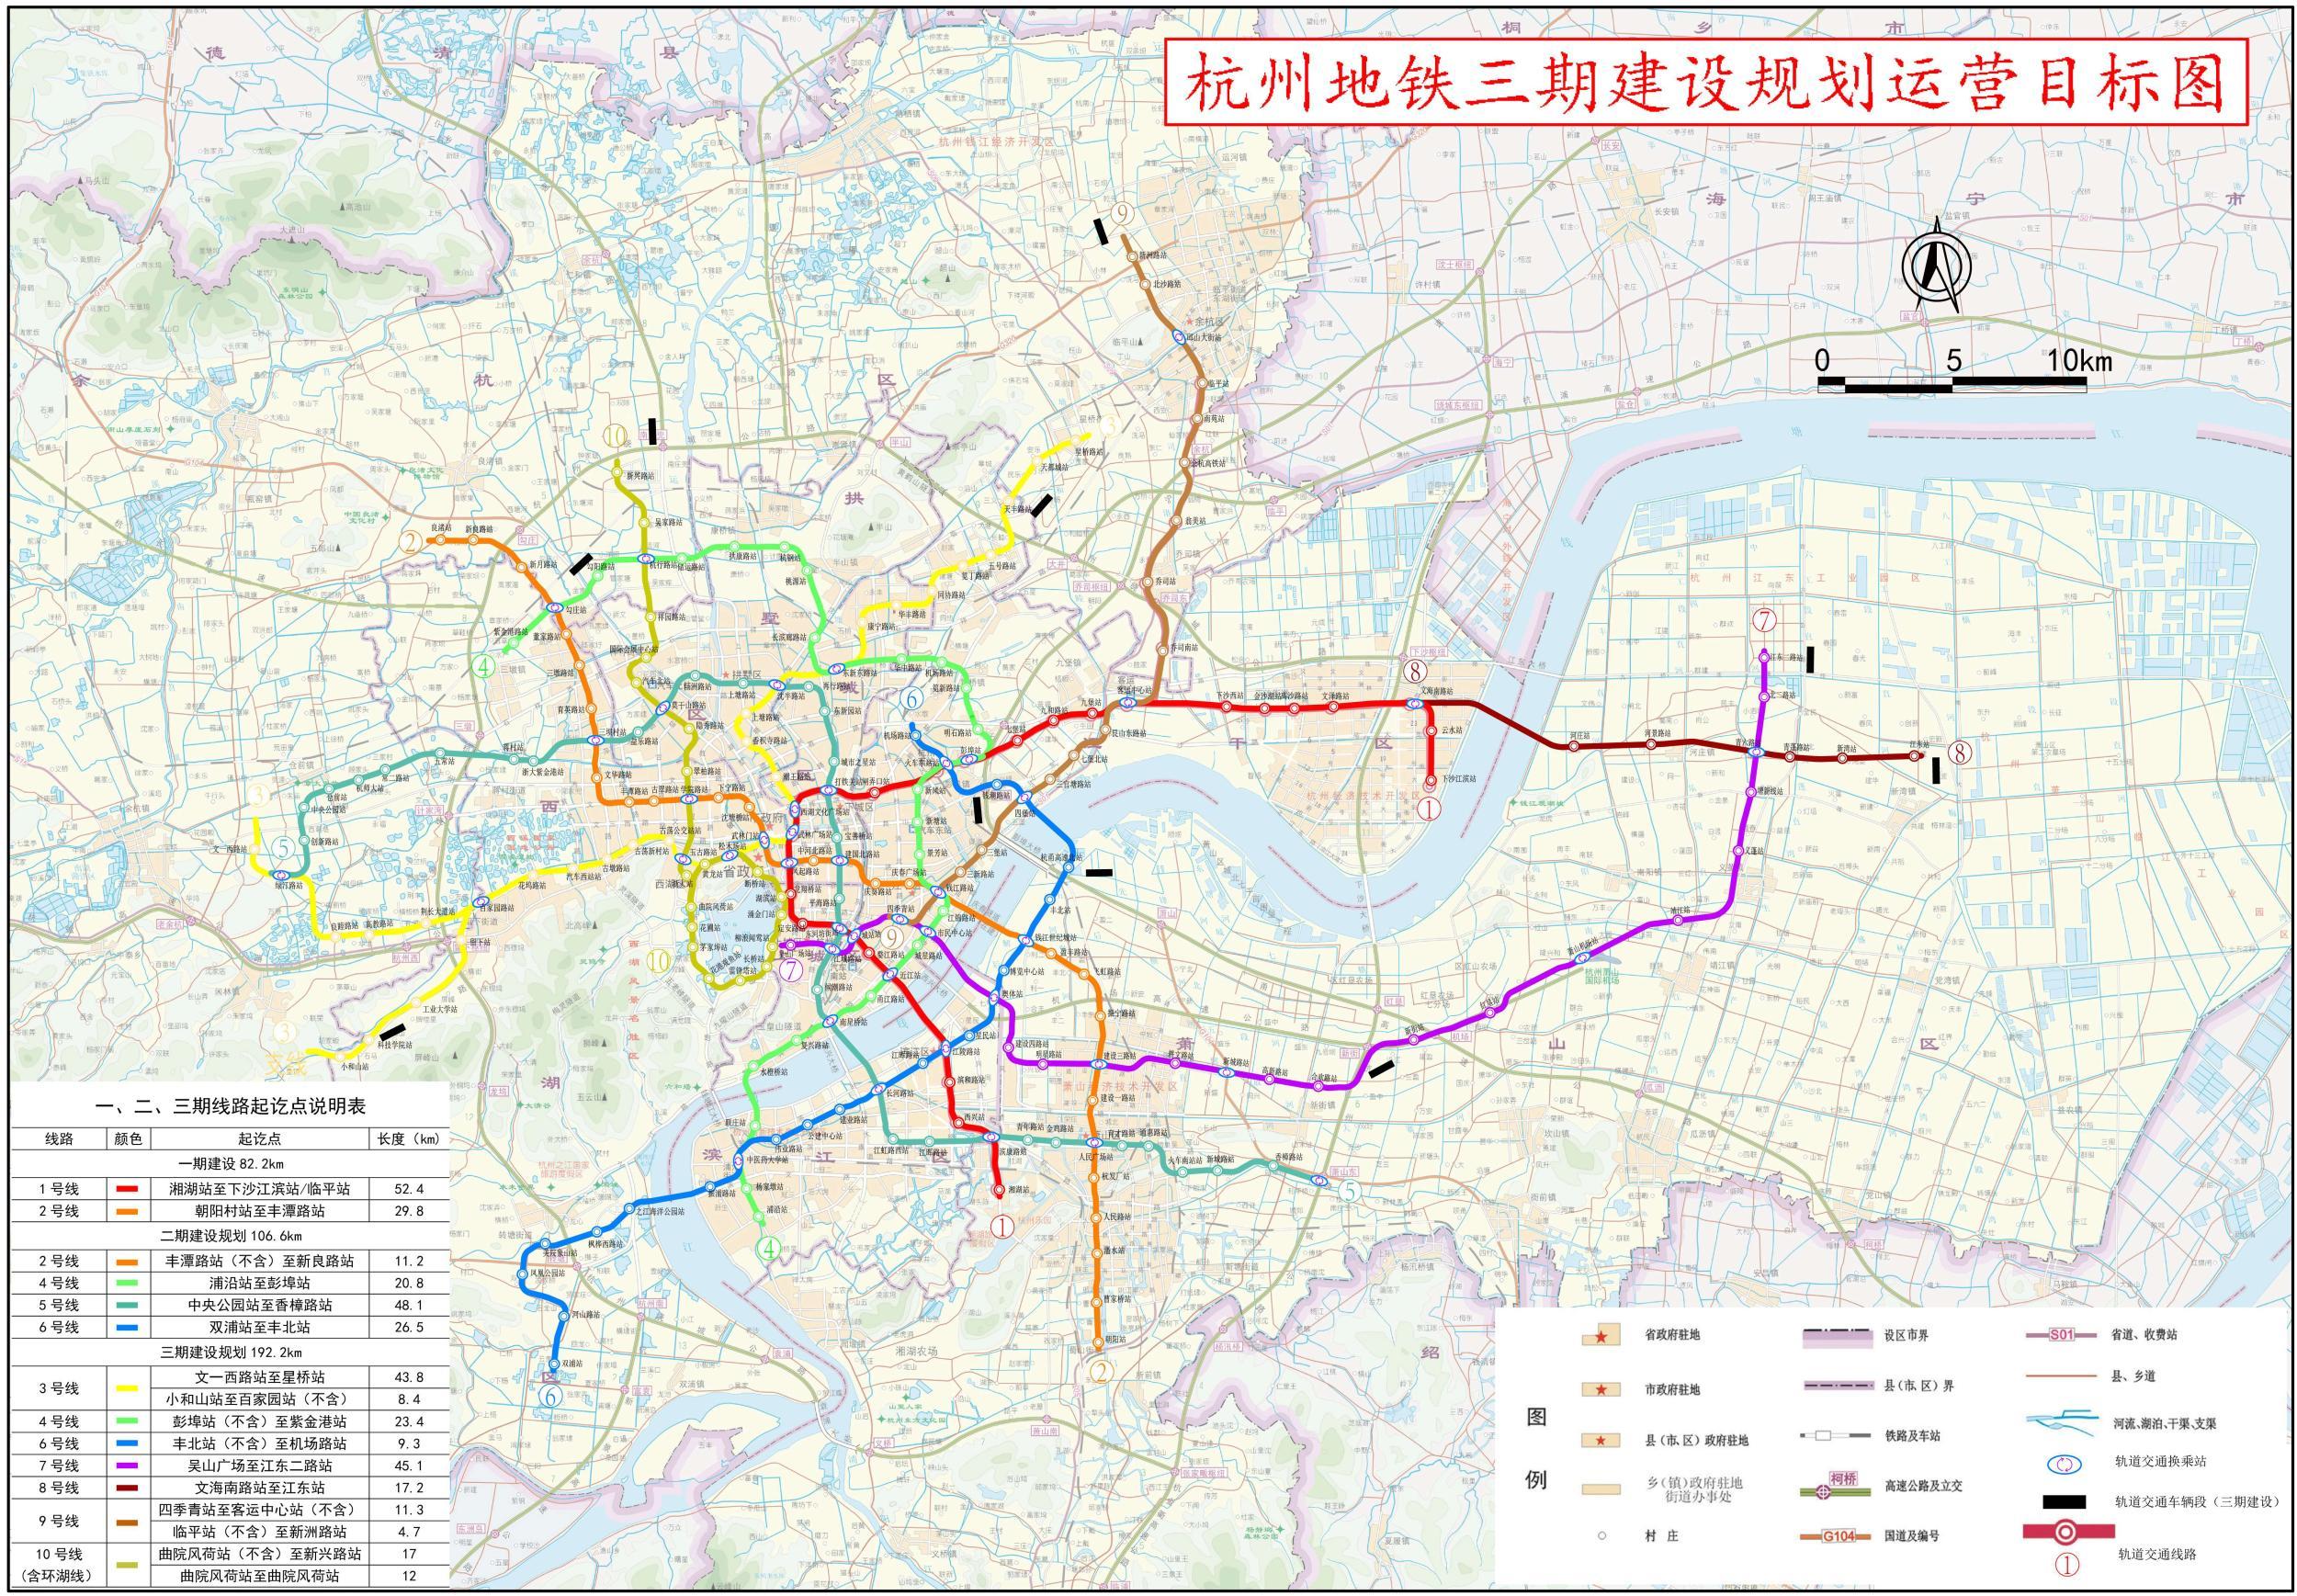 杭州地铁的三期规划,2022年亚运会前应该大部分能开通,未来几年属于